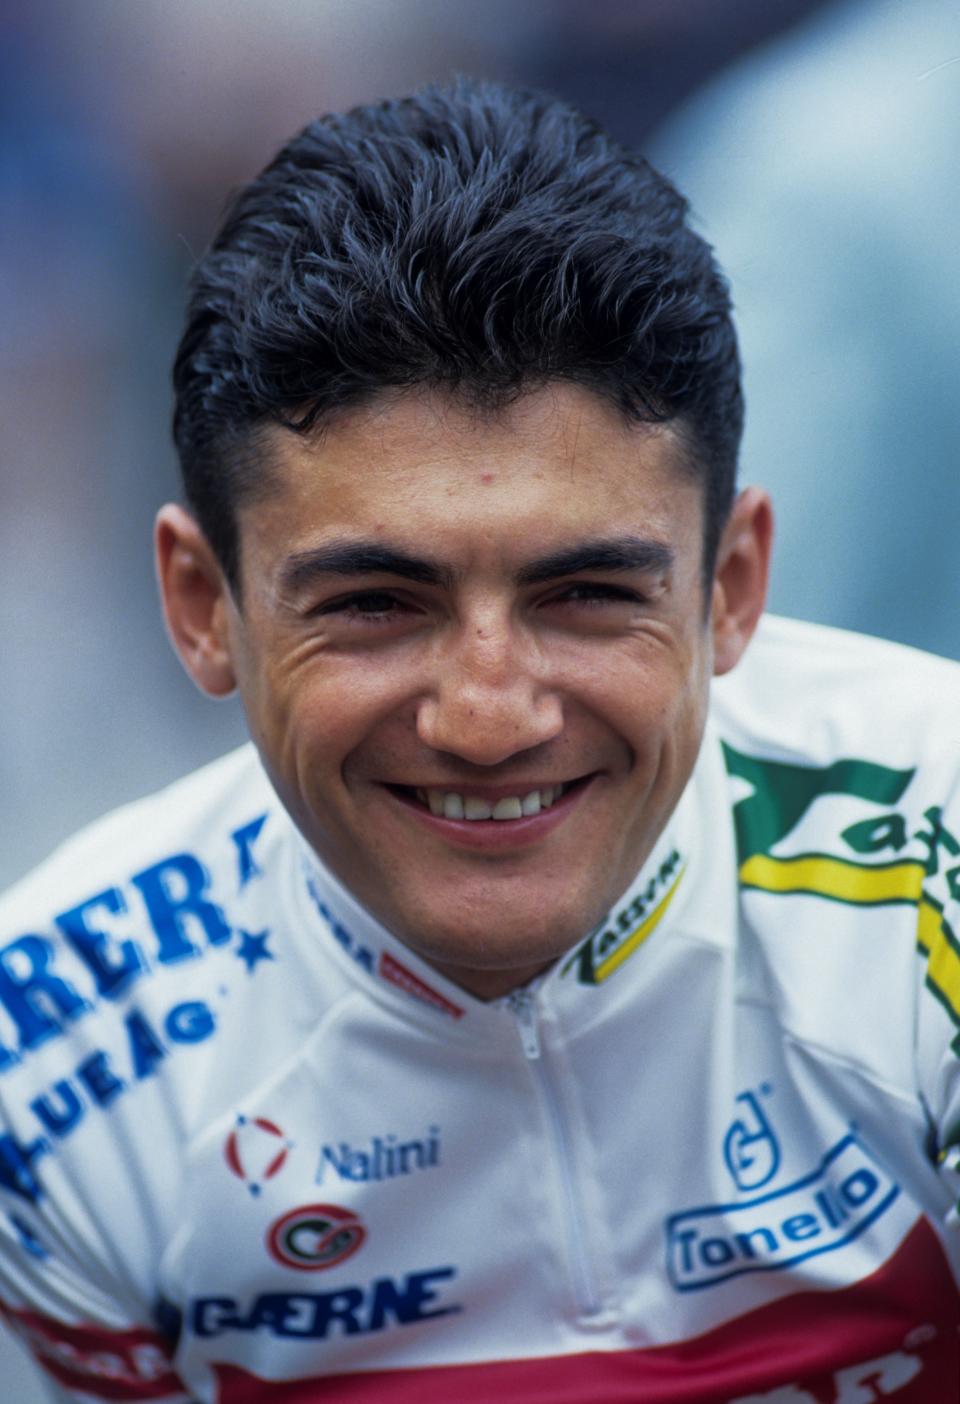 Nacido en 1963 en la ciudad de Uboldo, en la provincia de Varese, Chiappucci se convirtió en ciclista profesional en 1985 con el equipo Carrera y consiguió sus primeras victorias importantes a finales de aquella década. Sin embargo, su salto al estrellato se produjo en 1990. (Foto: Marka / Universal Images Group / Getty Images).